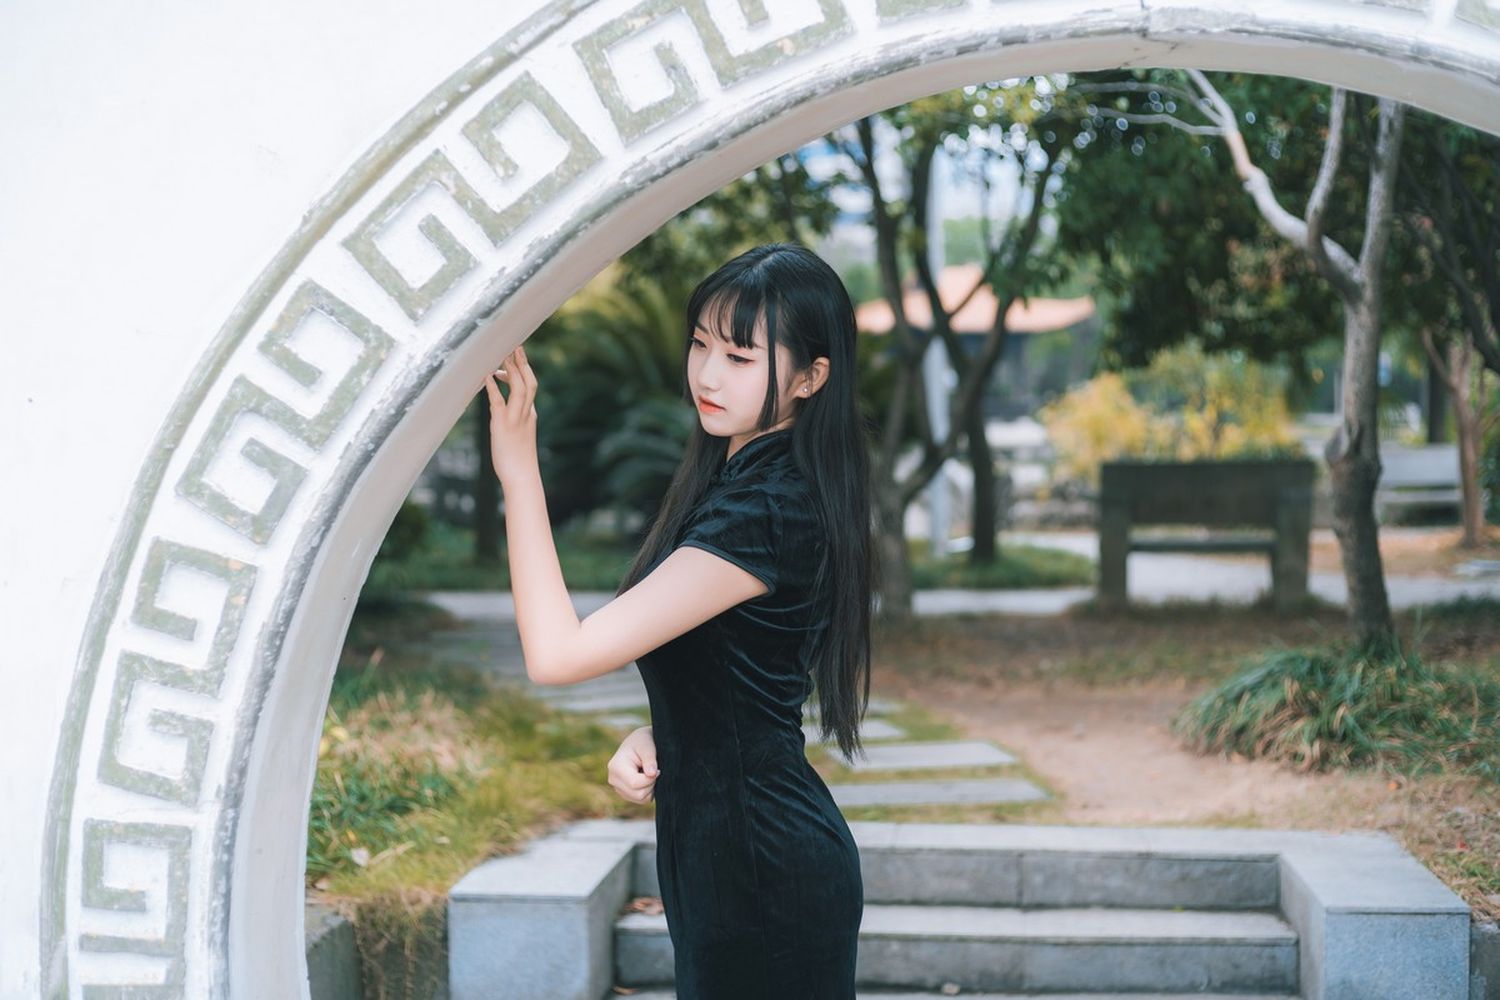 清纯美少女黑丝美腿+黑色旗袍系列户外公园写真